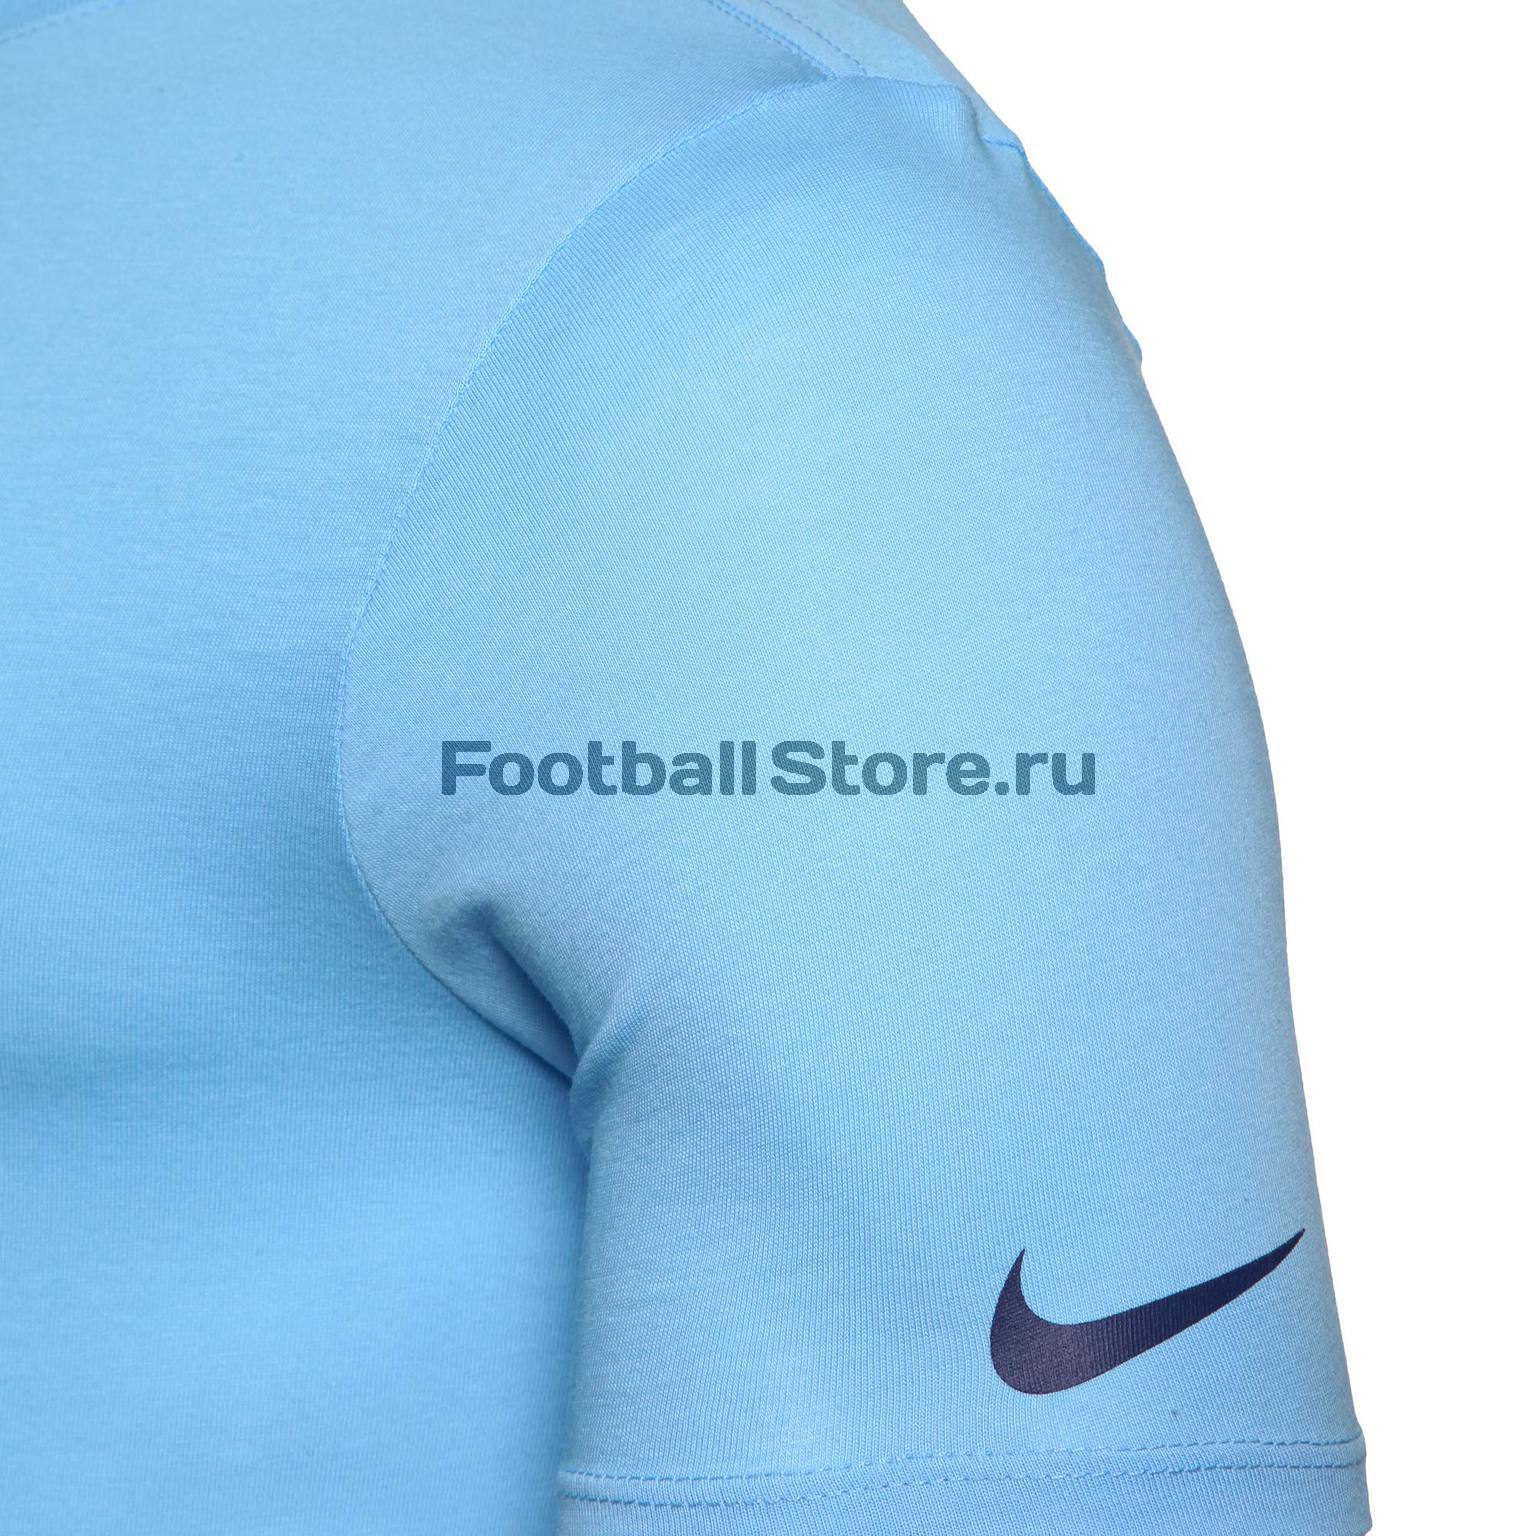 Футболка хлопковая Nike Manchester City 898623-488